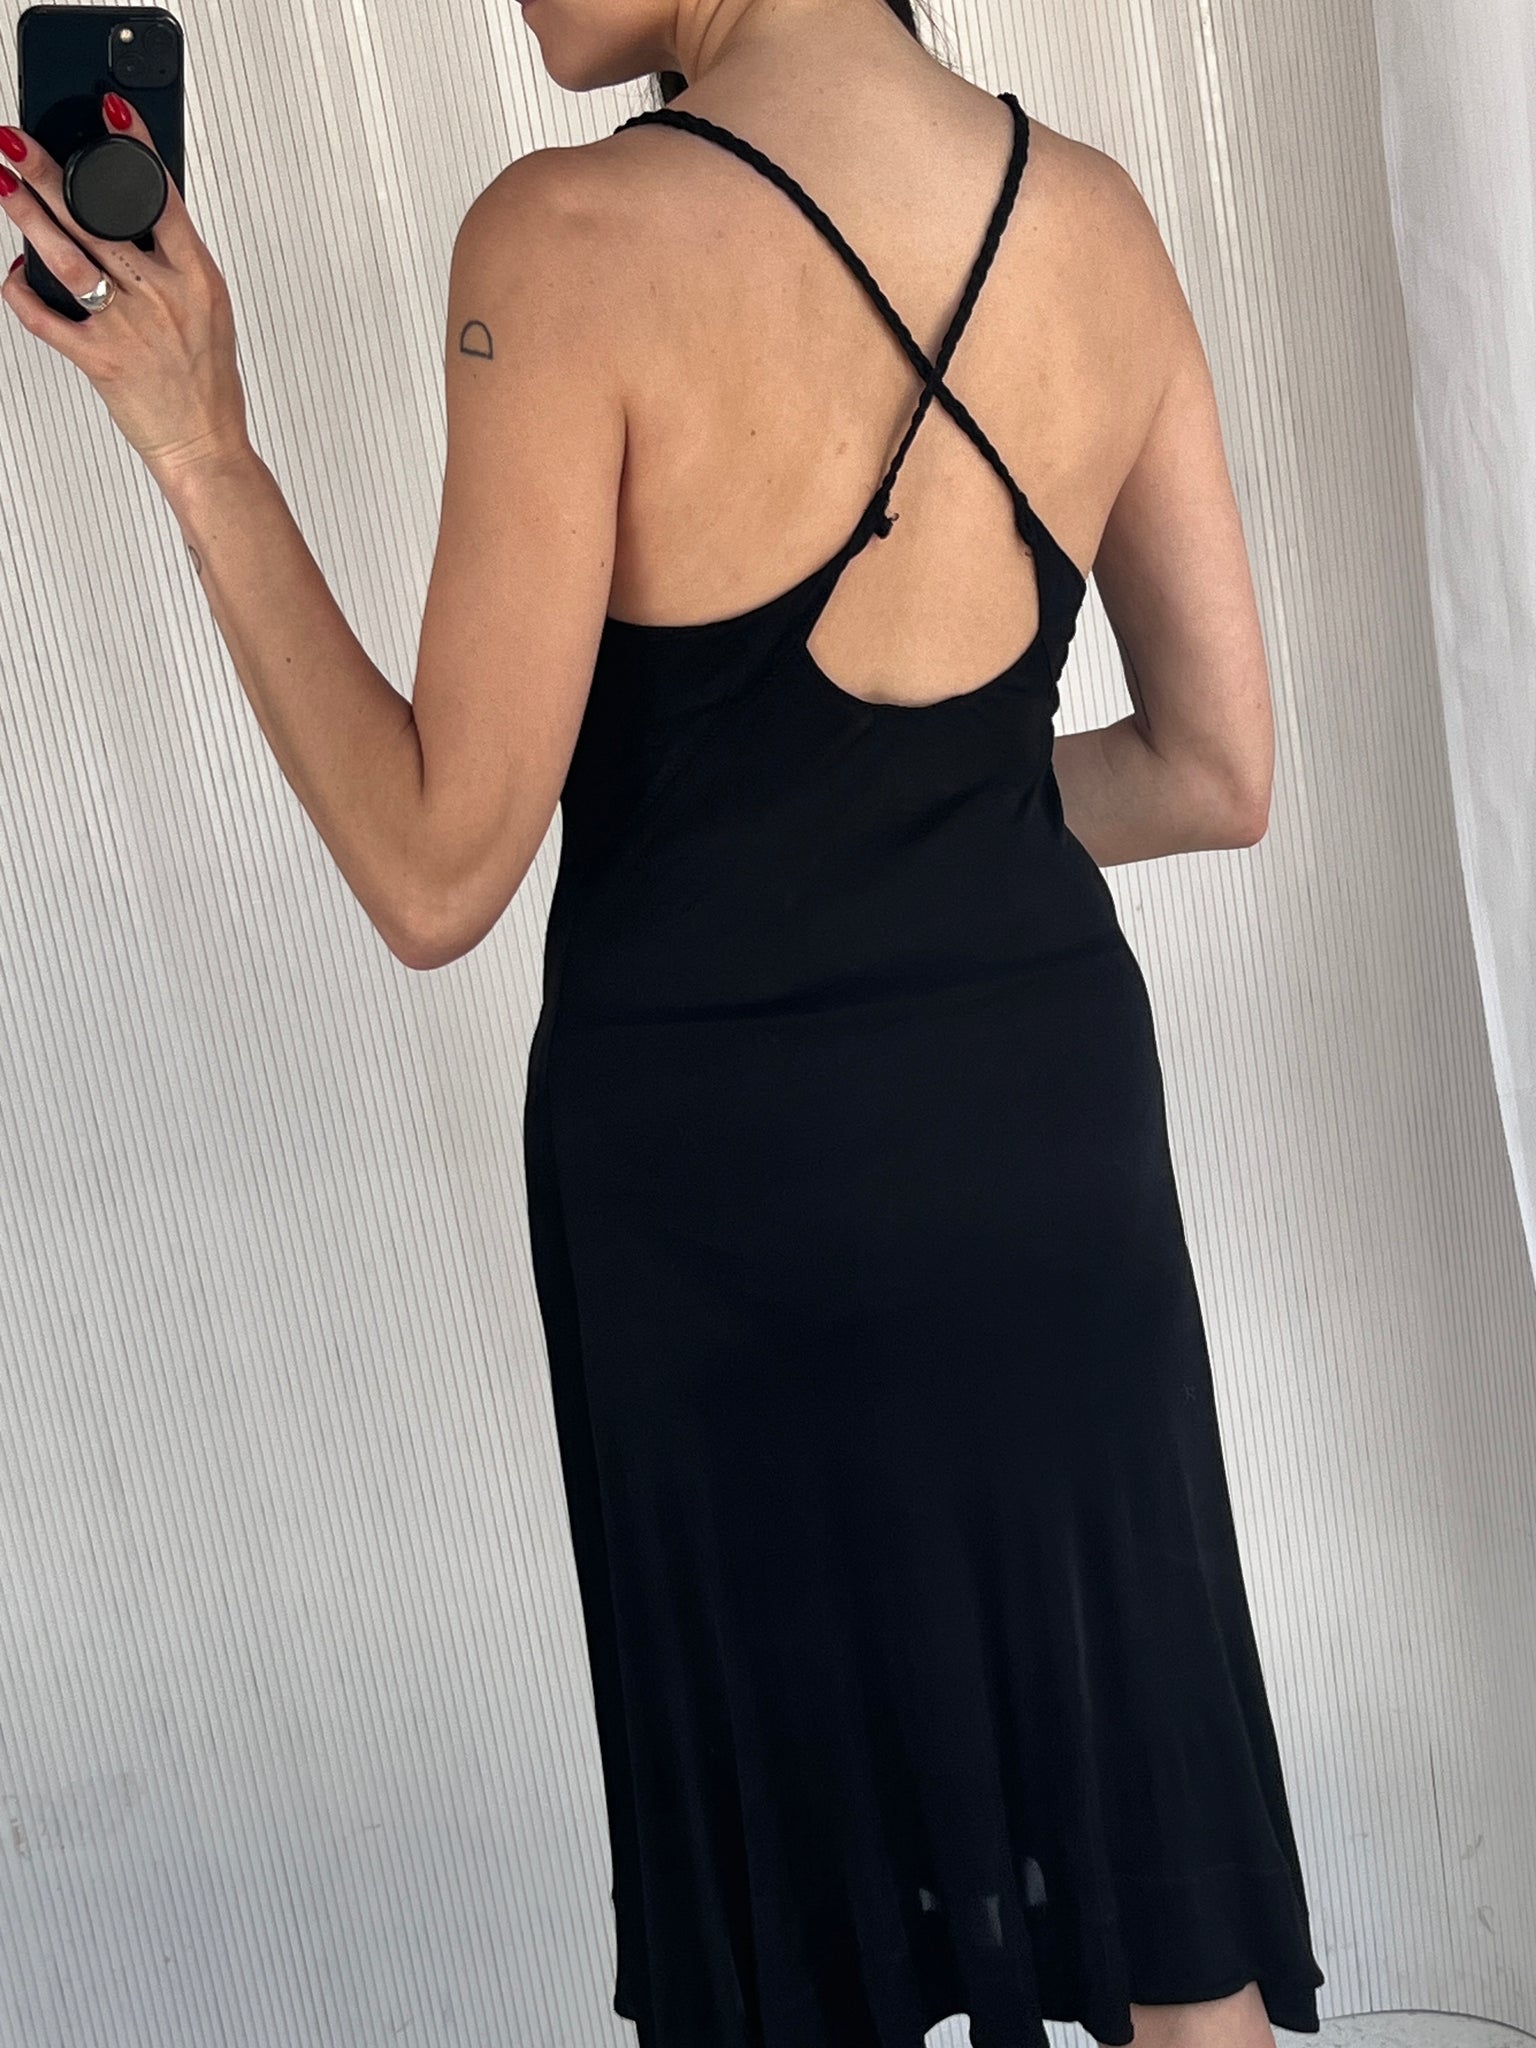 Cavalli black stretch knit dress